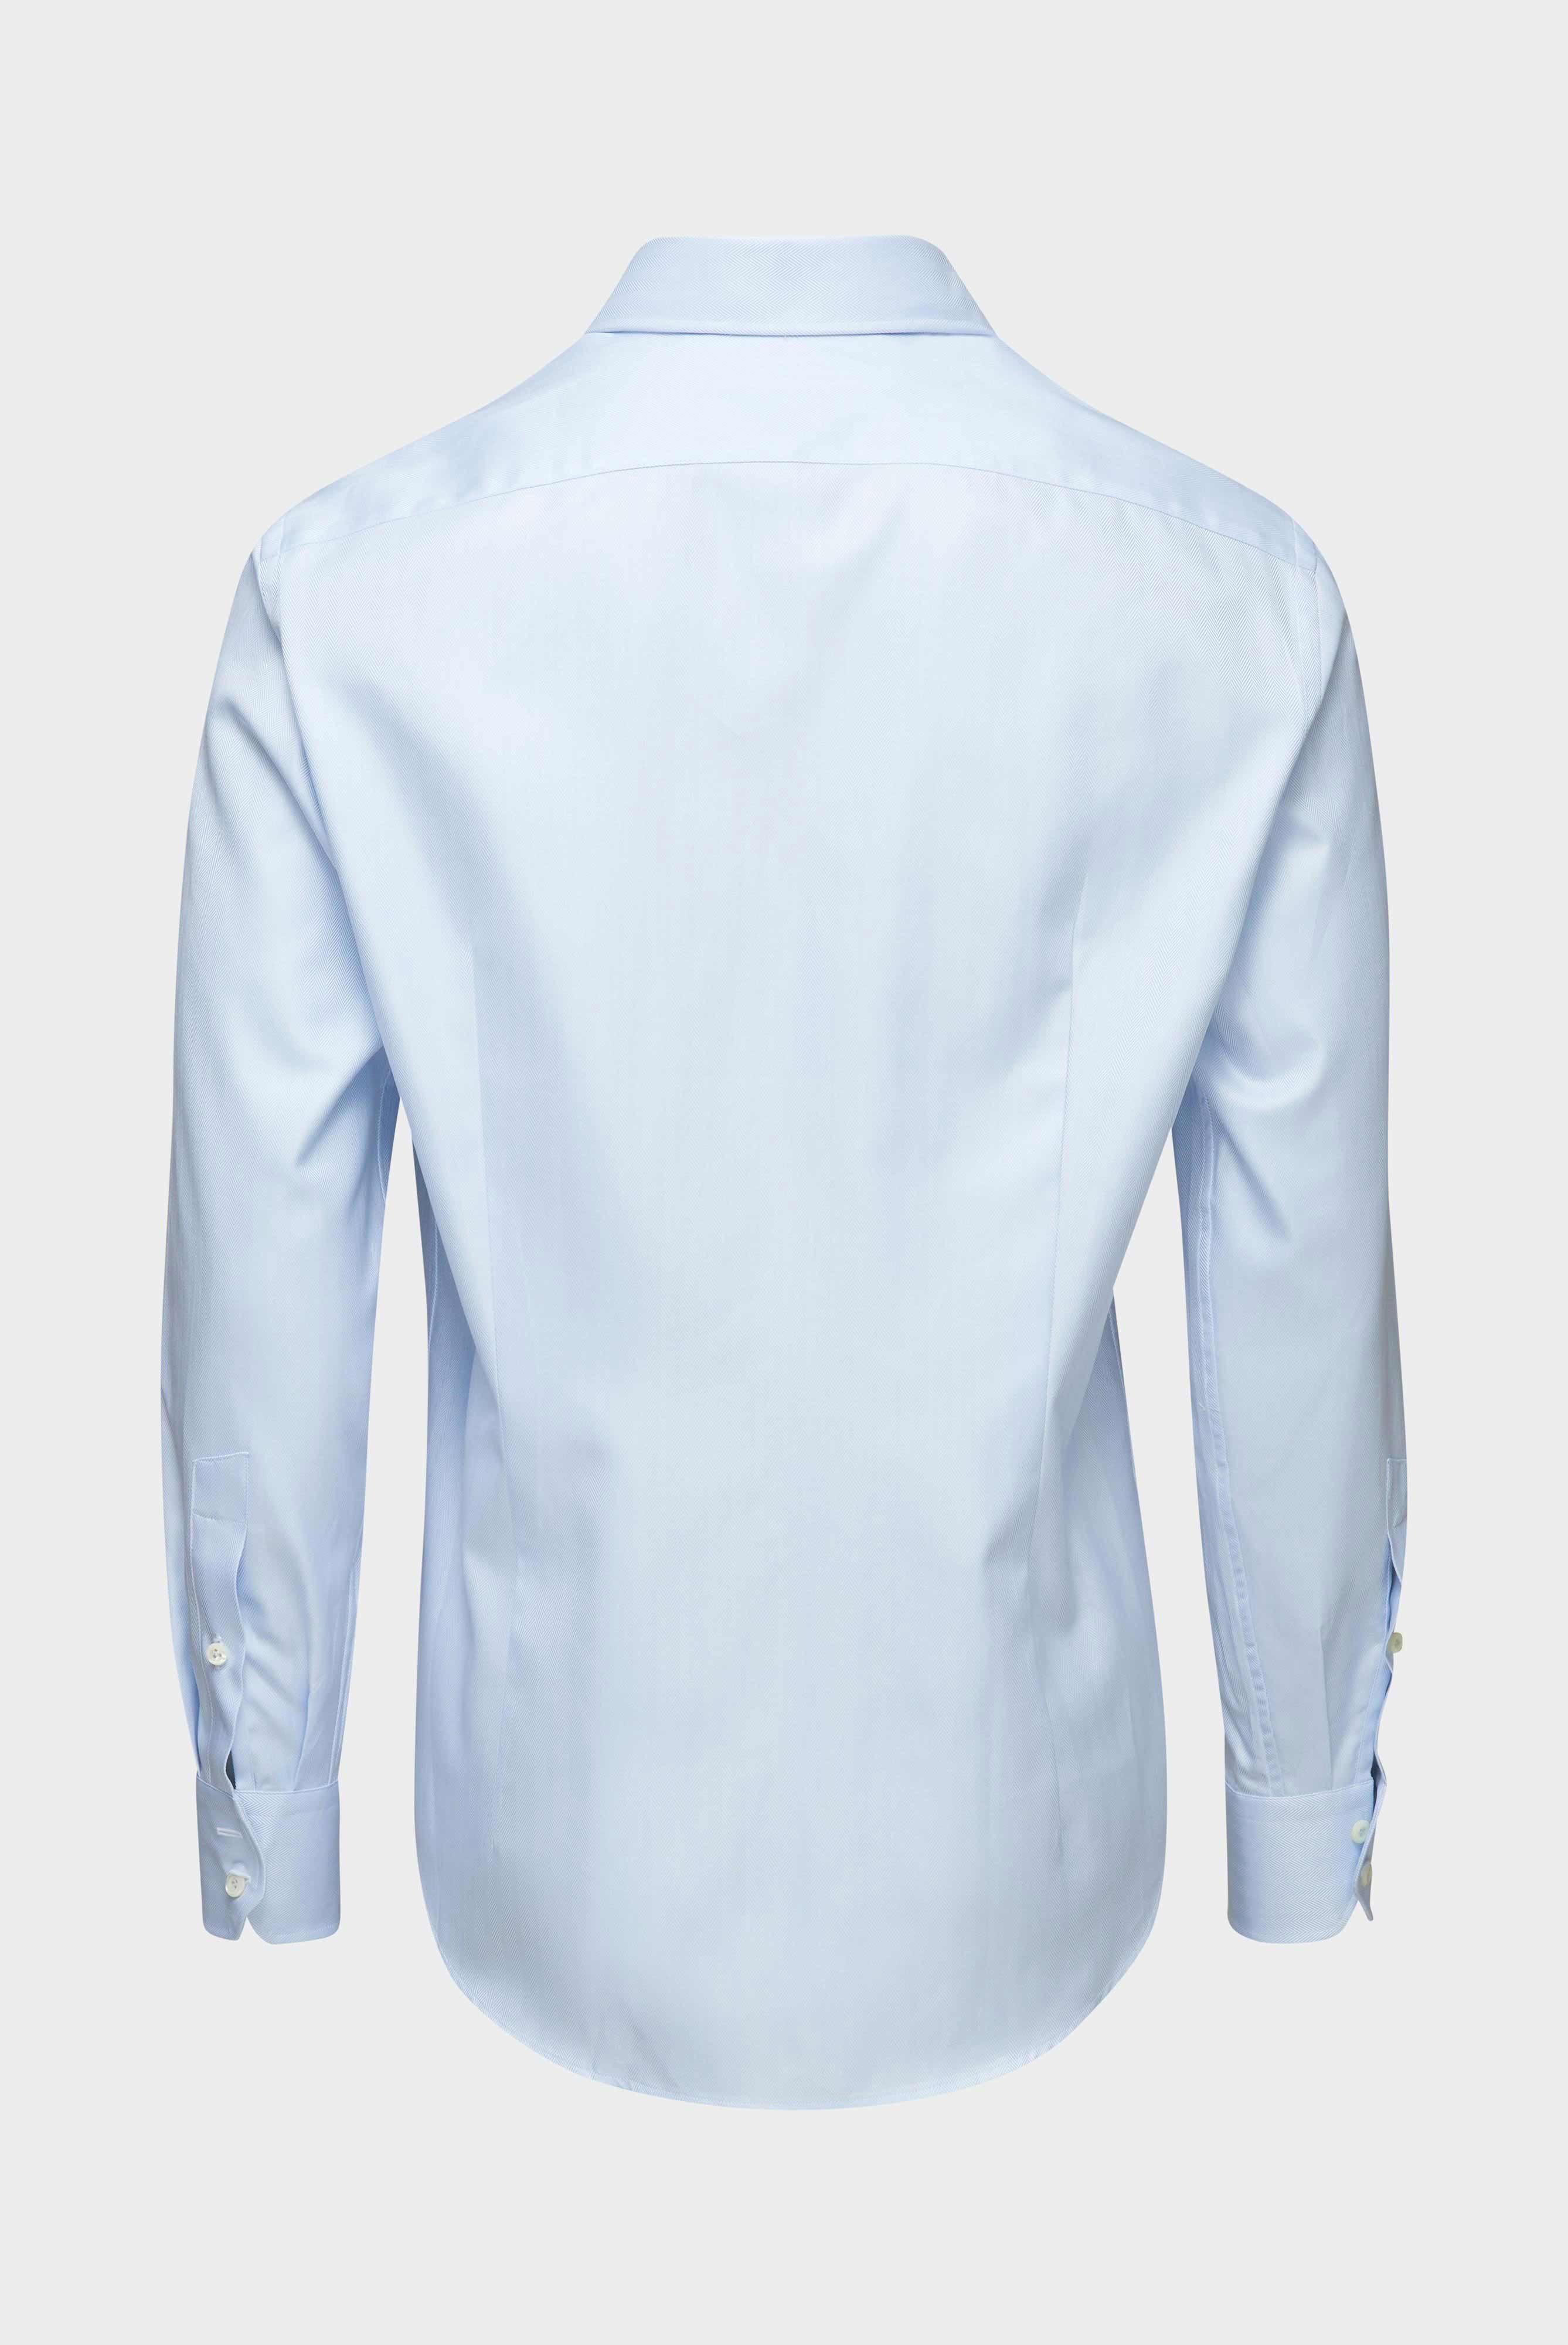 Business Hemden+Twill Hemd mit Fischgrat Tailor Fit+20.2020.AV.102501.710.39